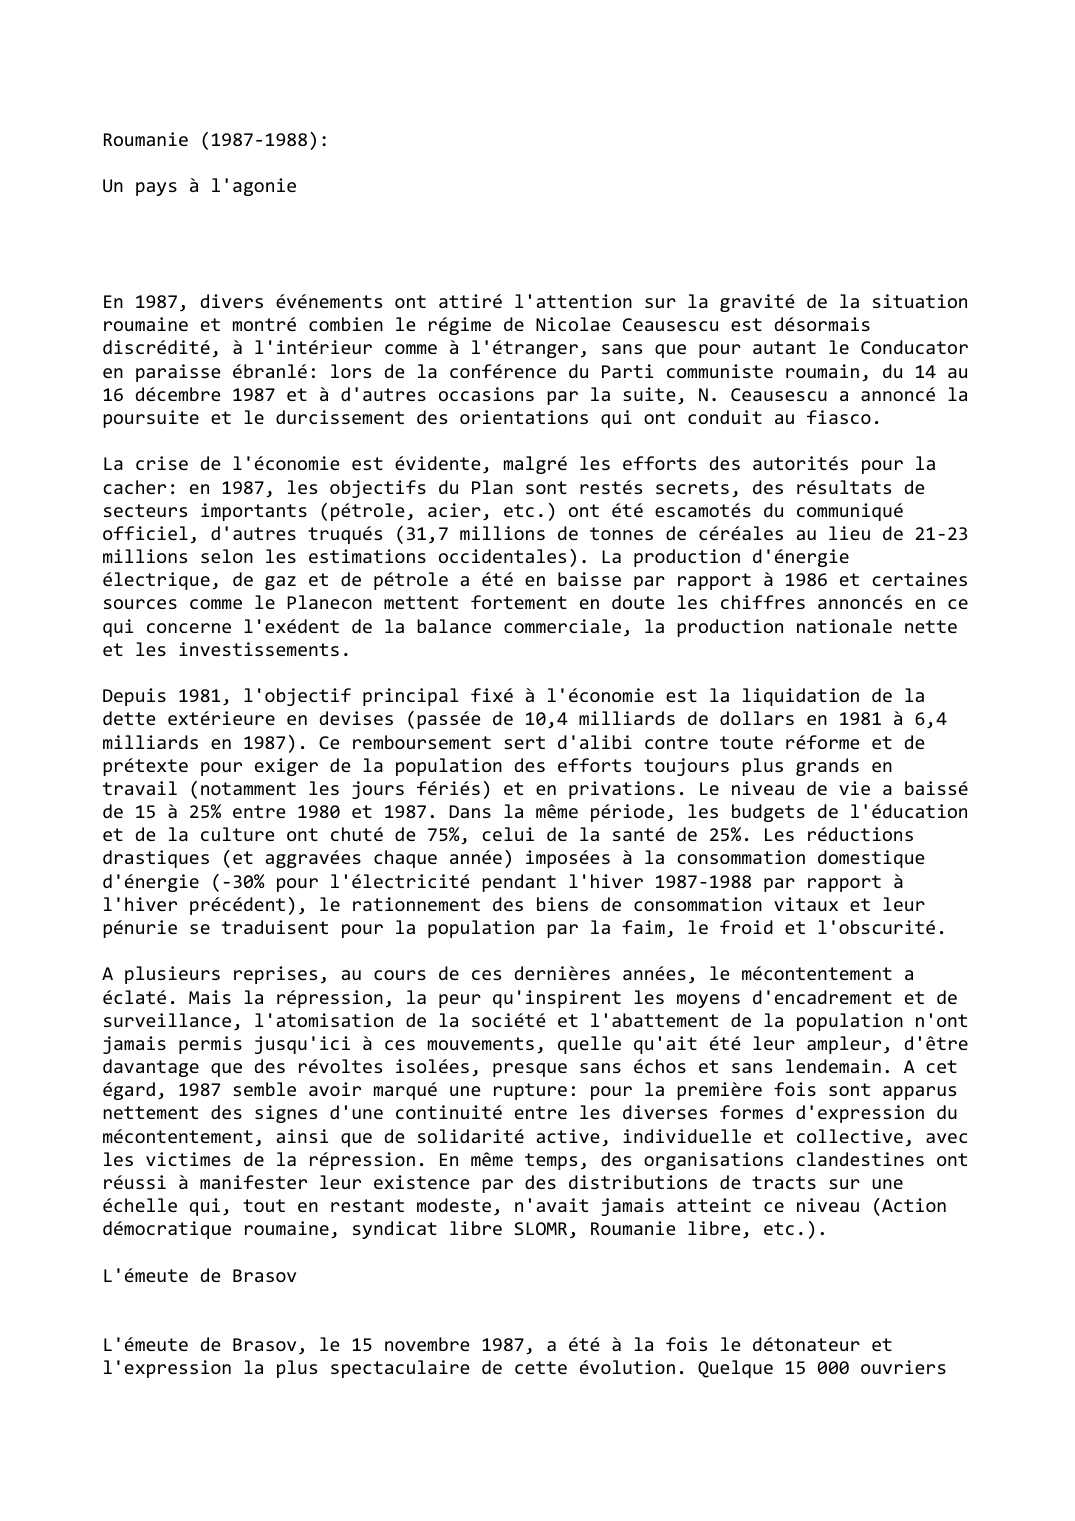 Prévisualisation du document Roumanie (1987-1988):

Un pays à l'agonie